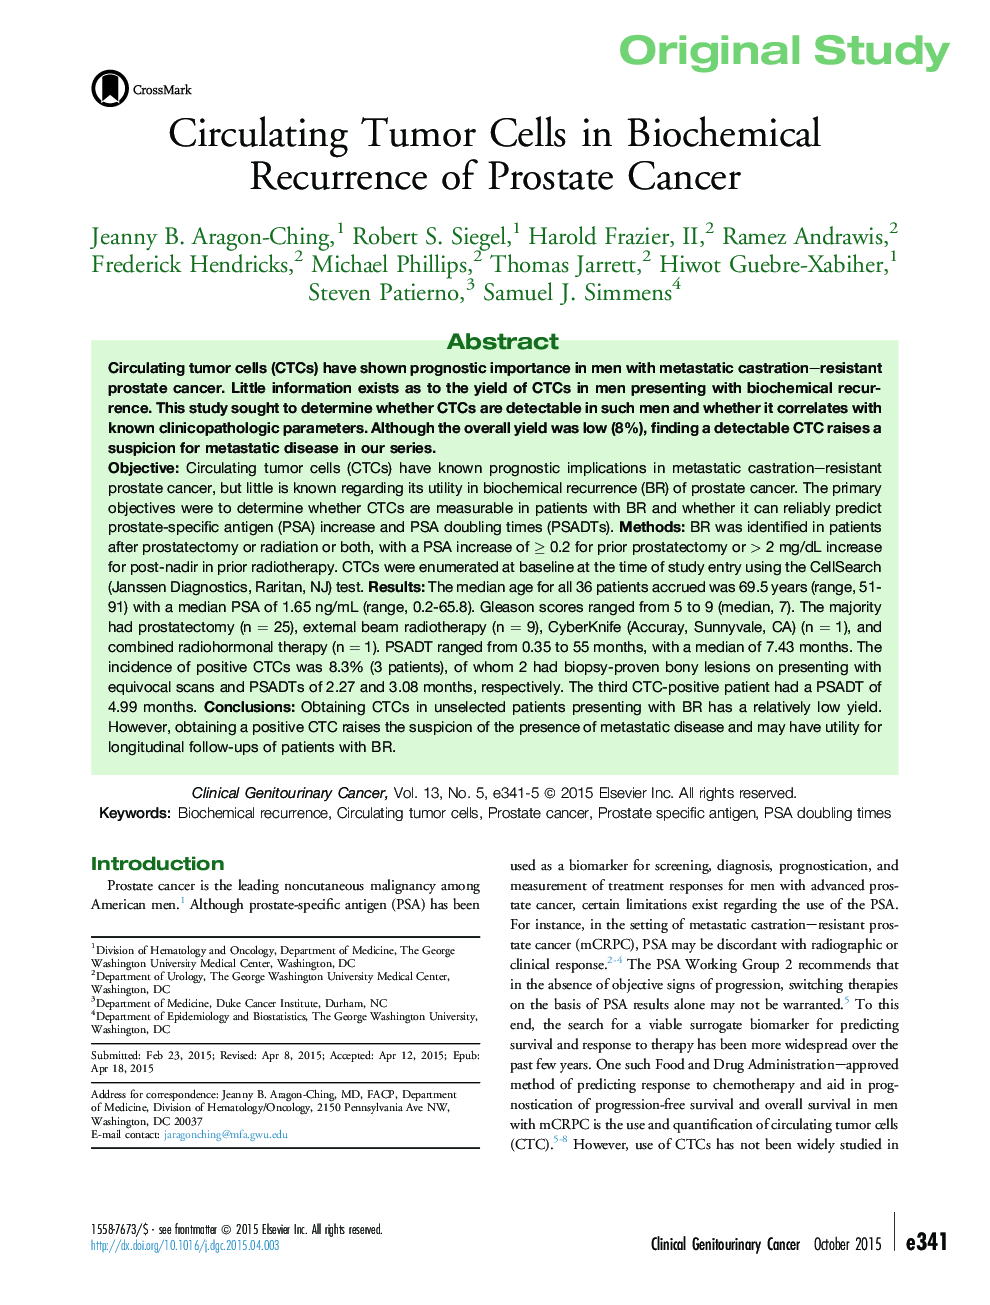 سلول های توموری در عود بیوشیمیایی سرطان پروستات 